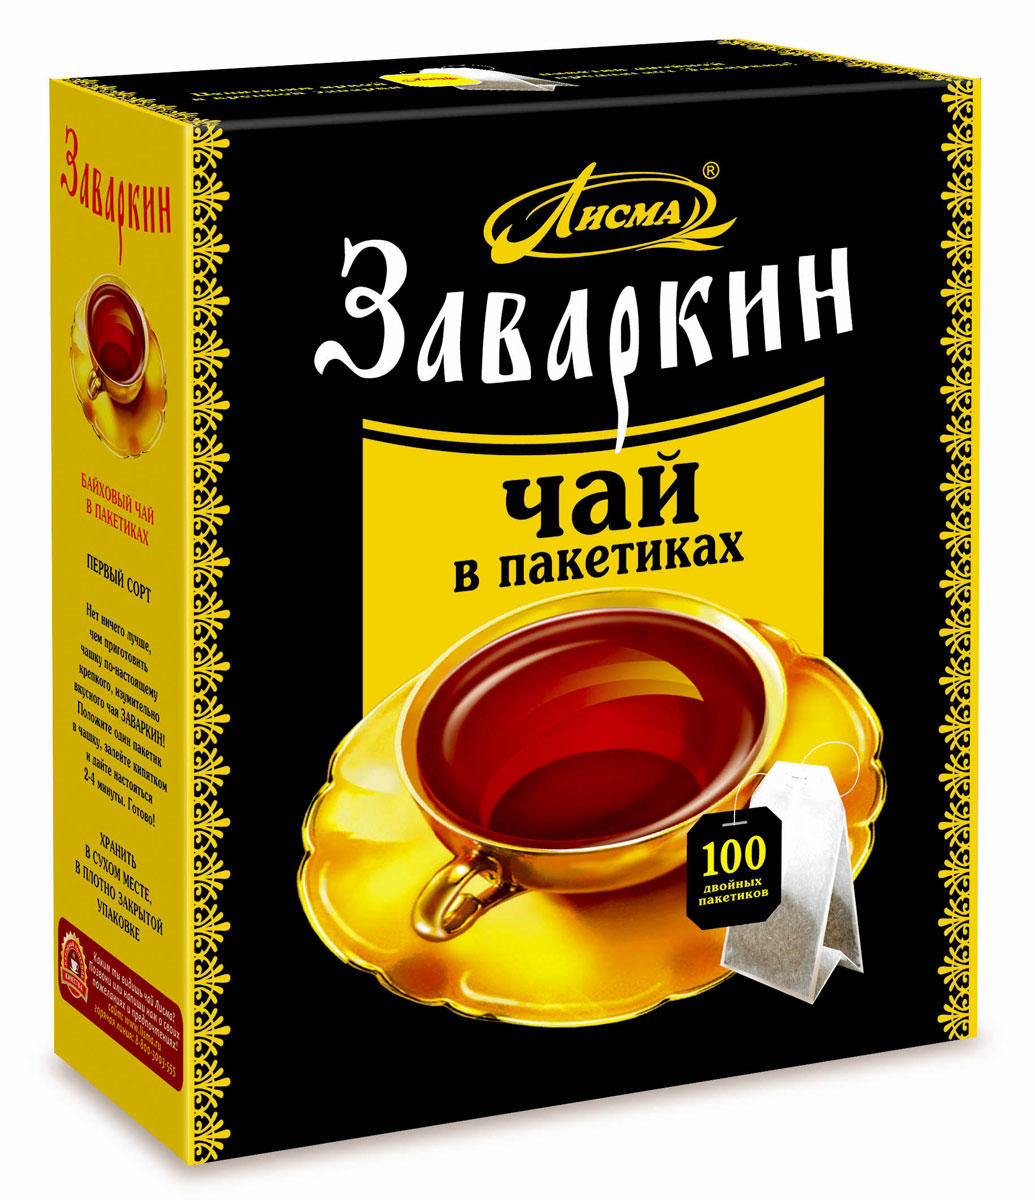 Лисма Заваркин черный чай в пакетиках, 100 шт